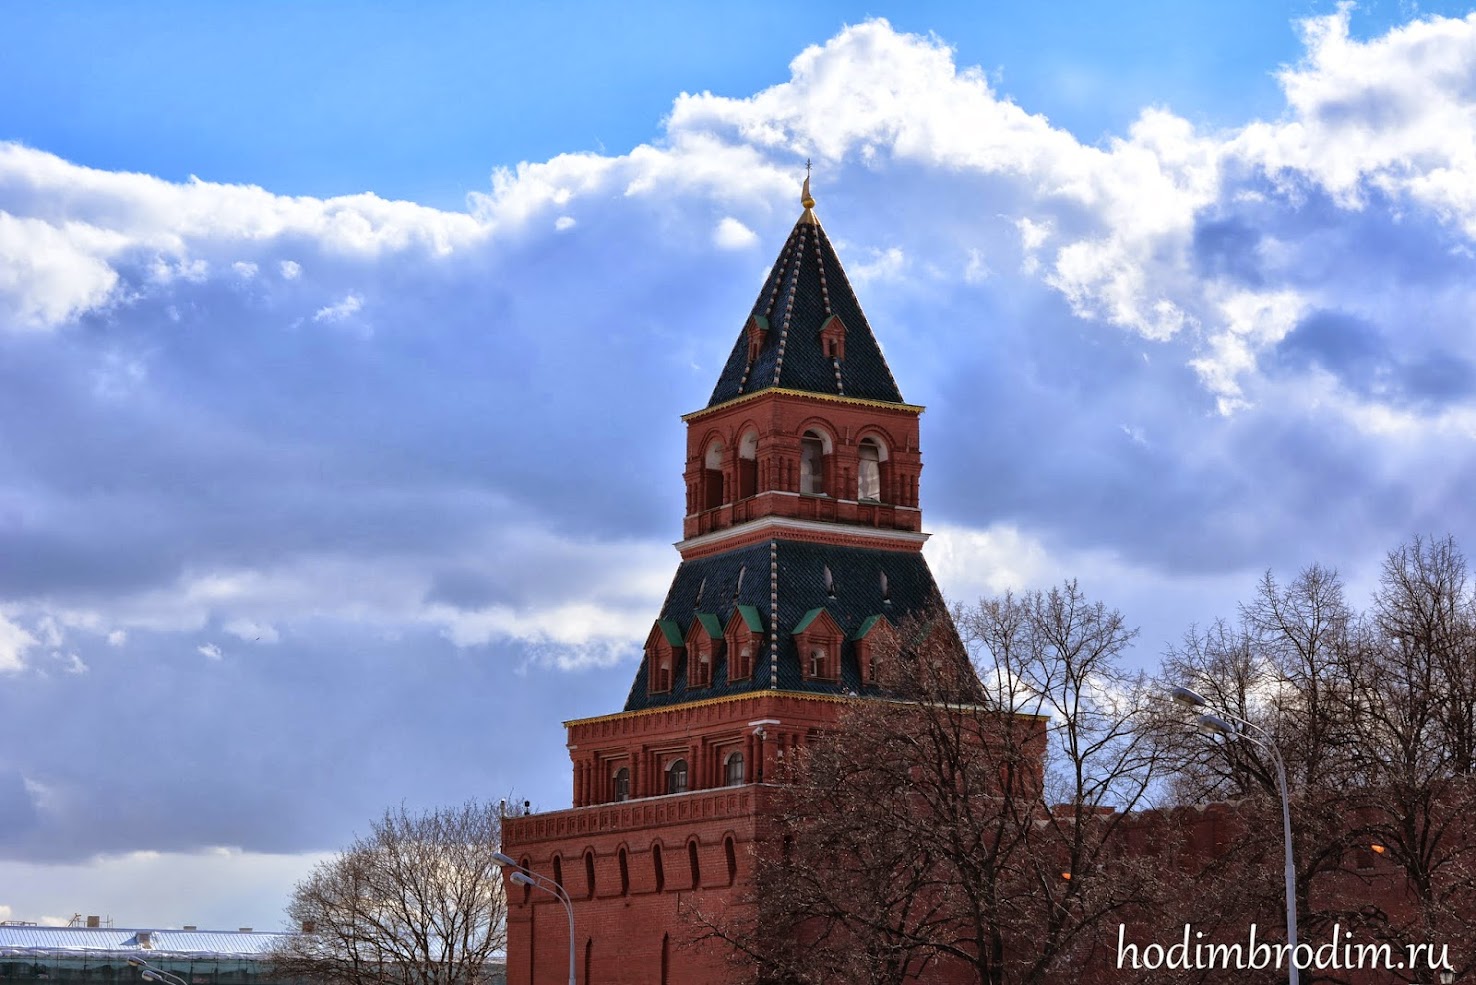 Константино-Еленинская башня московского кремля